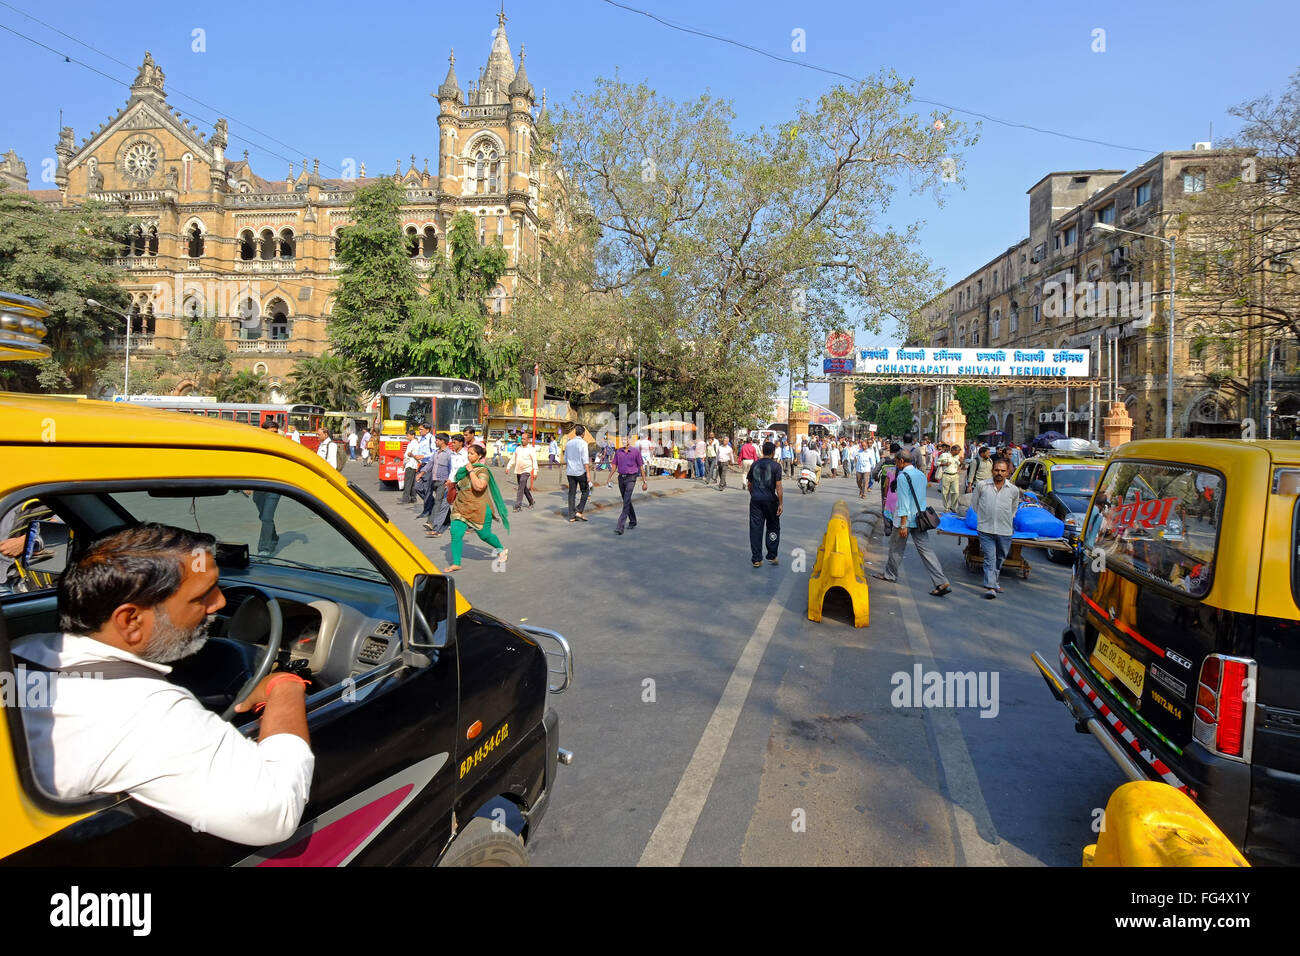 Des taxis à l'extérieur de la gare la Gare Chhatrapati Shivaji Terminus (CST), anciennement connu sous le nom de Victoria Terminus, l'un des plus célèbres édifices de Mumbai Banque D'Images